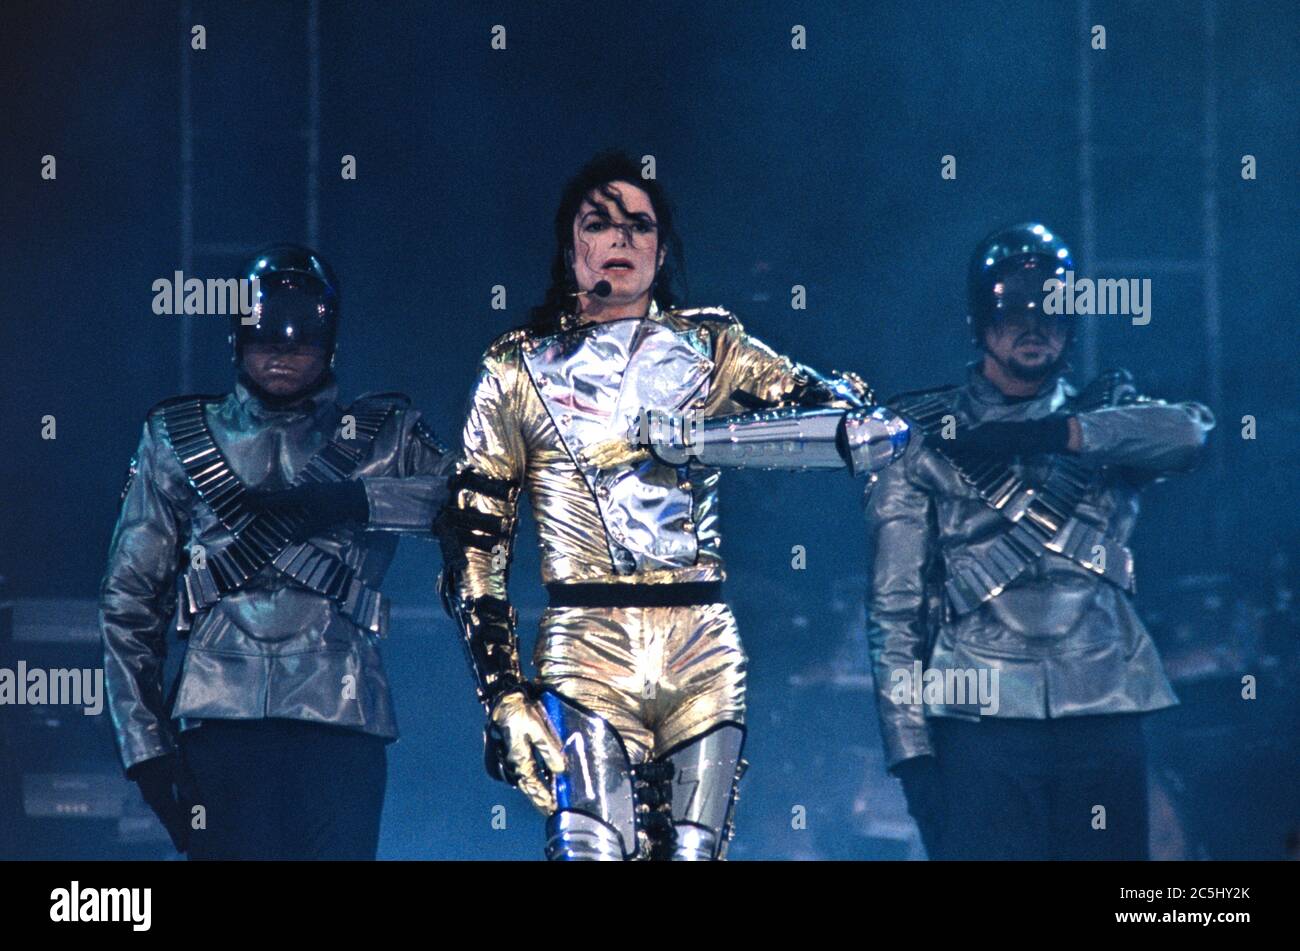 13.06.1997, Kiel, Deutschland, Michael Jackson - King of Pop - live und  open air mit Tänzern der Show auf dem Nordmarksportfeld während seiner  'History World Tour' 1997. --- Besondere Bedingungen: Preisvereinbarung  notwendig